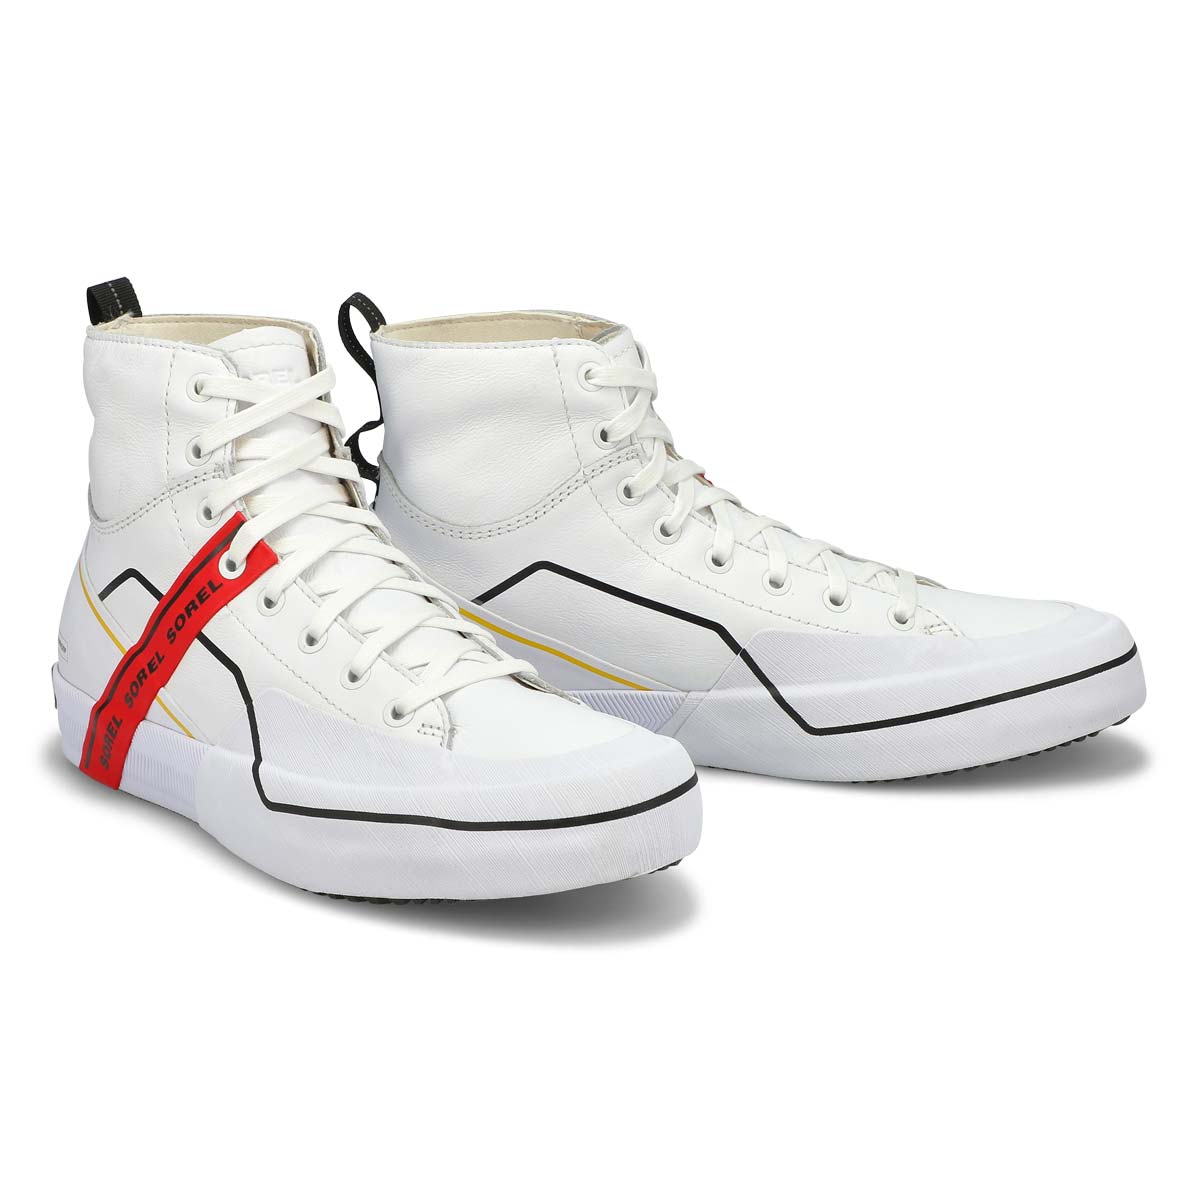 Men's Grit Waterproof Sneaker - White